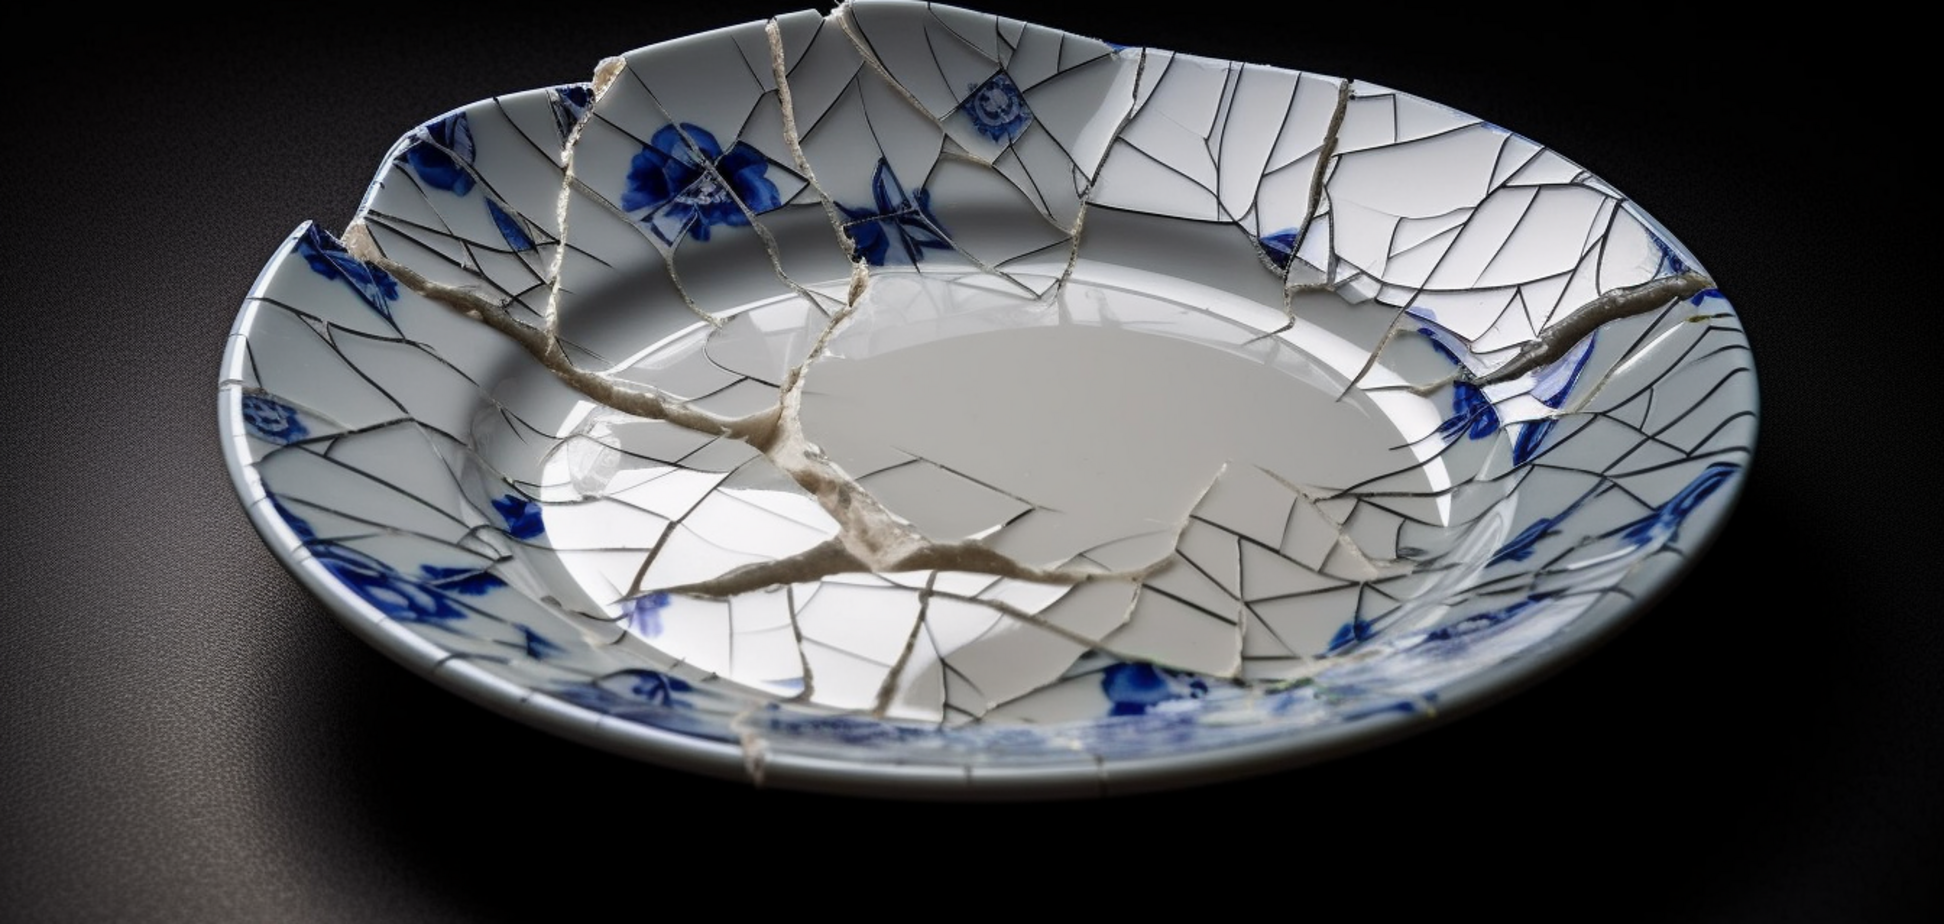 Що означає розбитий посуд і чи завжди це приносить нещастя